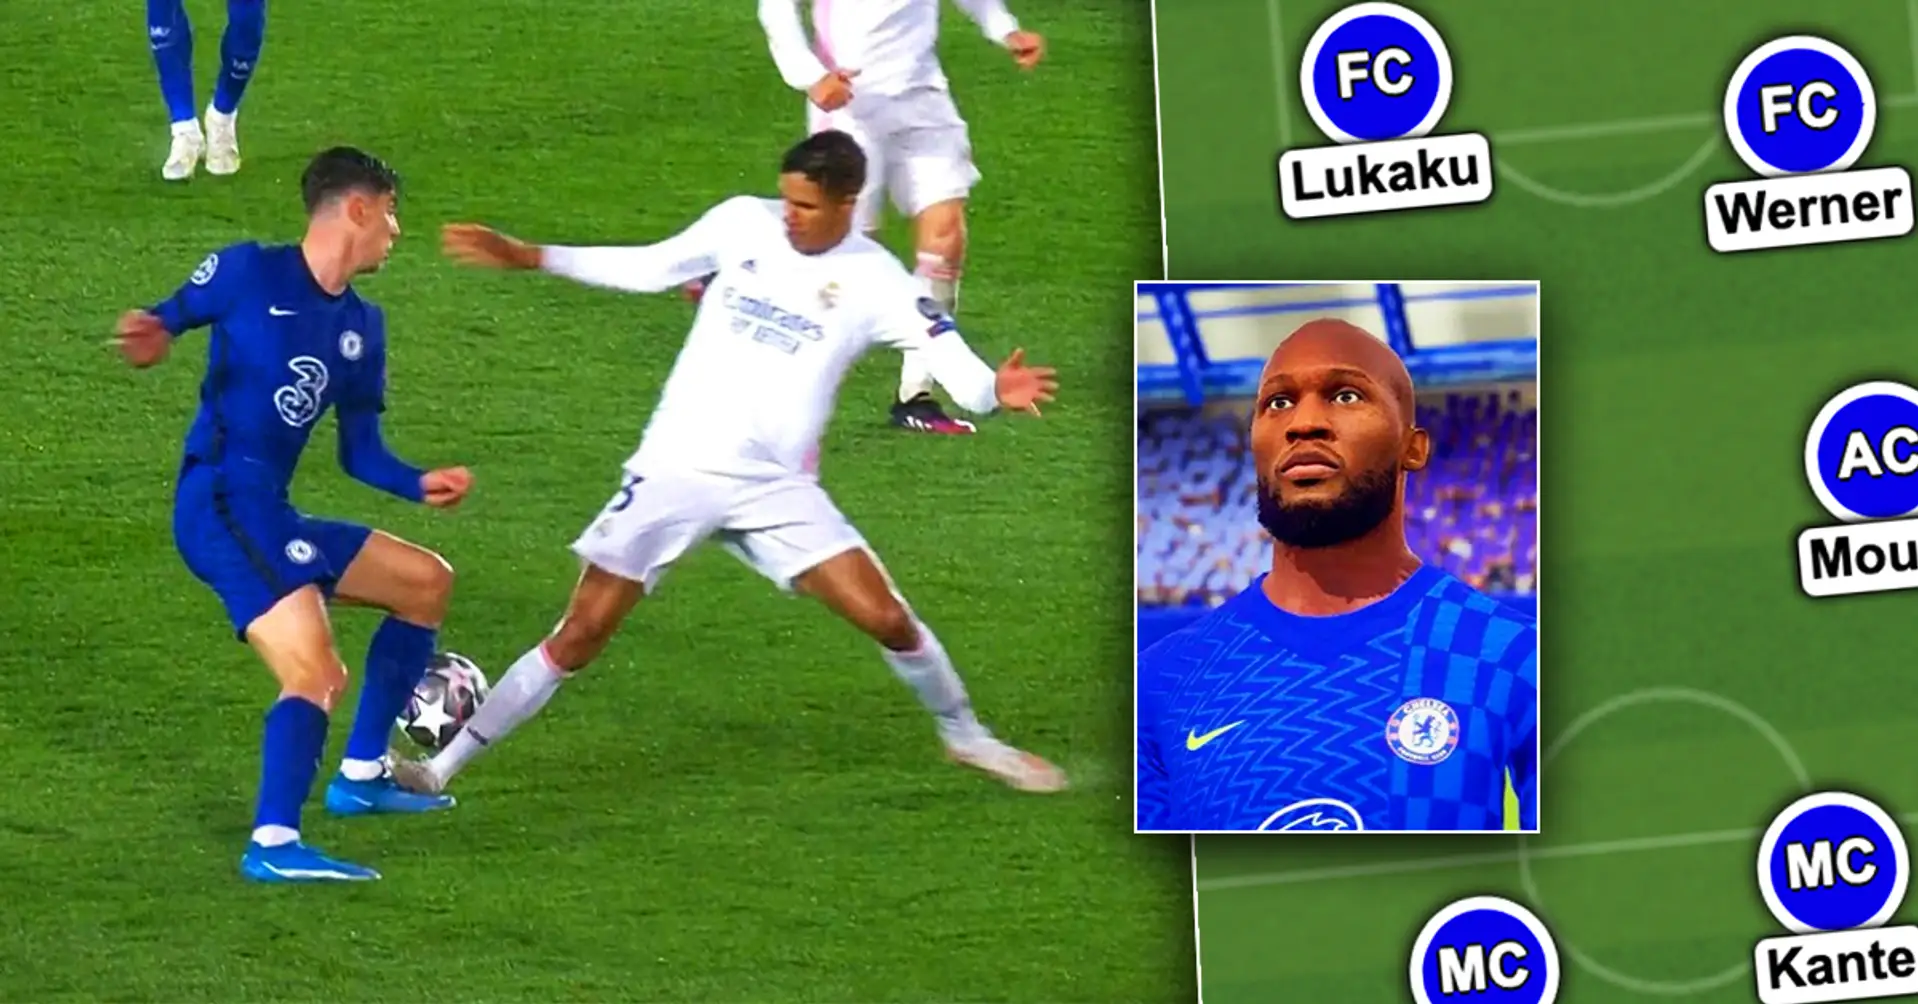 La impresionante formación del Chelsea con Lukaku para dominar el mundo del fútbol